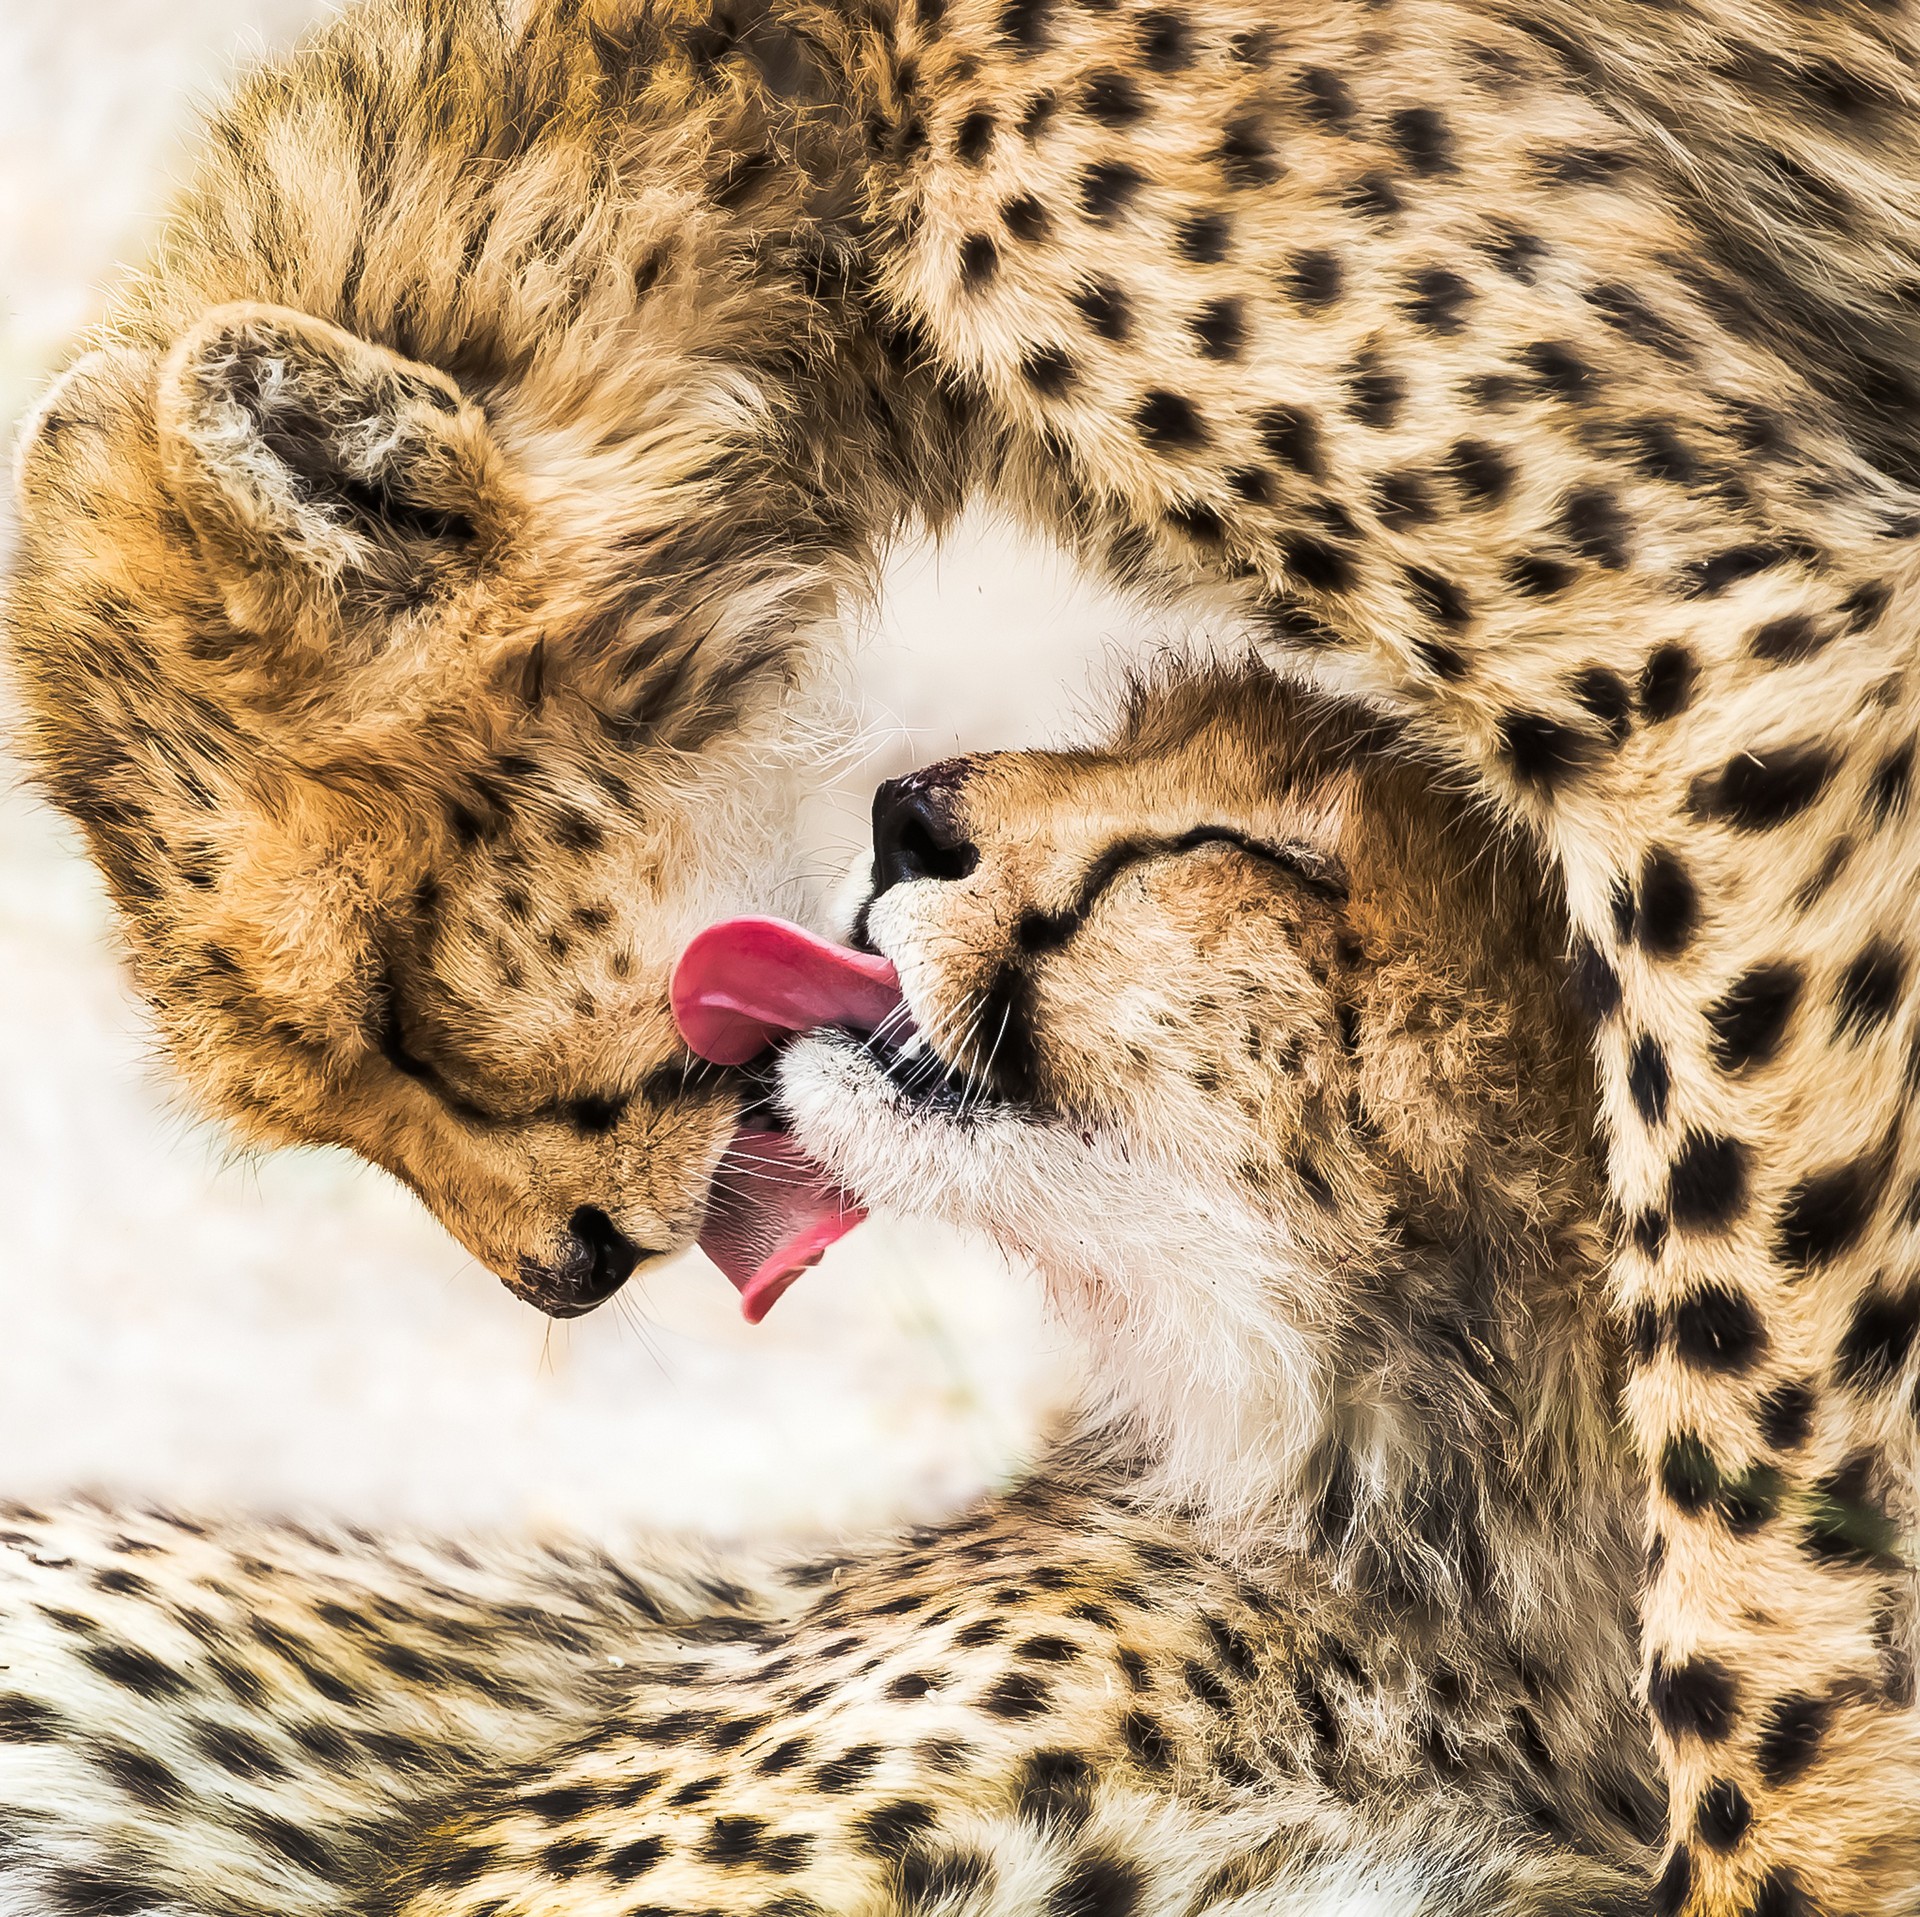 Победитель в категории Дикая природа, Открытая номинация, 2020. Гепарды в Ботсване съели антилопу и слизывают остатки крови друг с друга. Автор Гофэй Ли